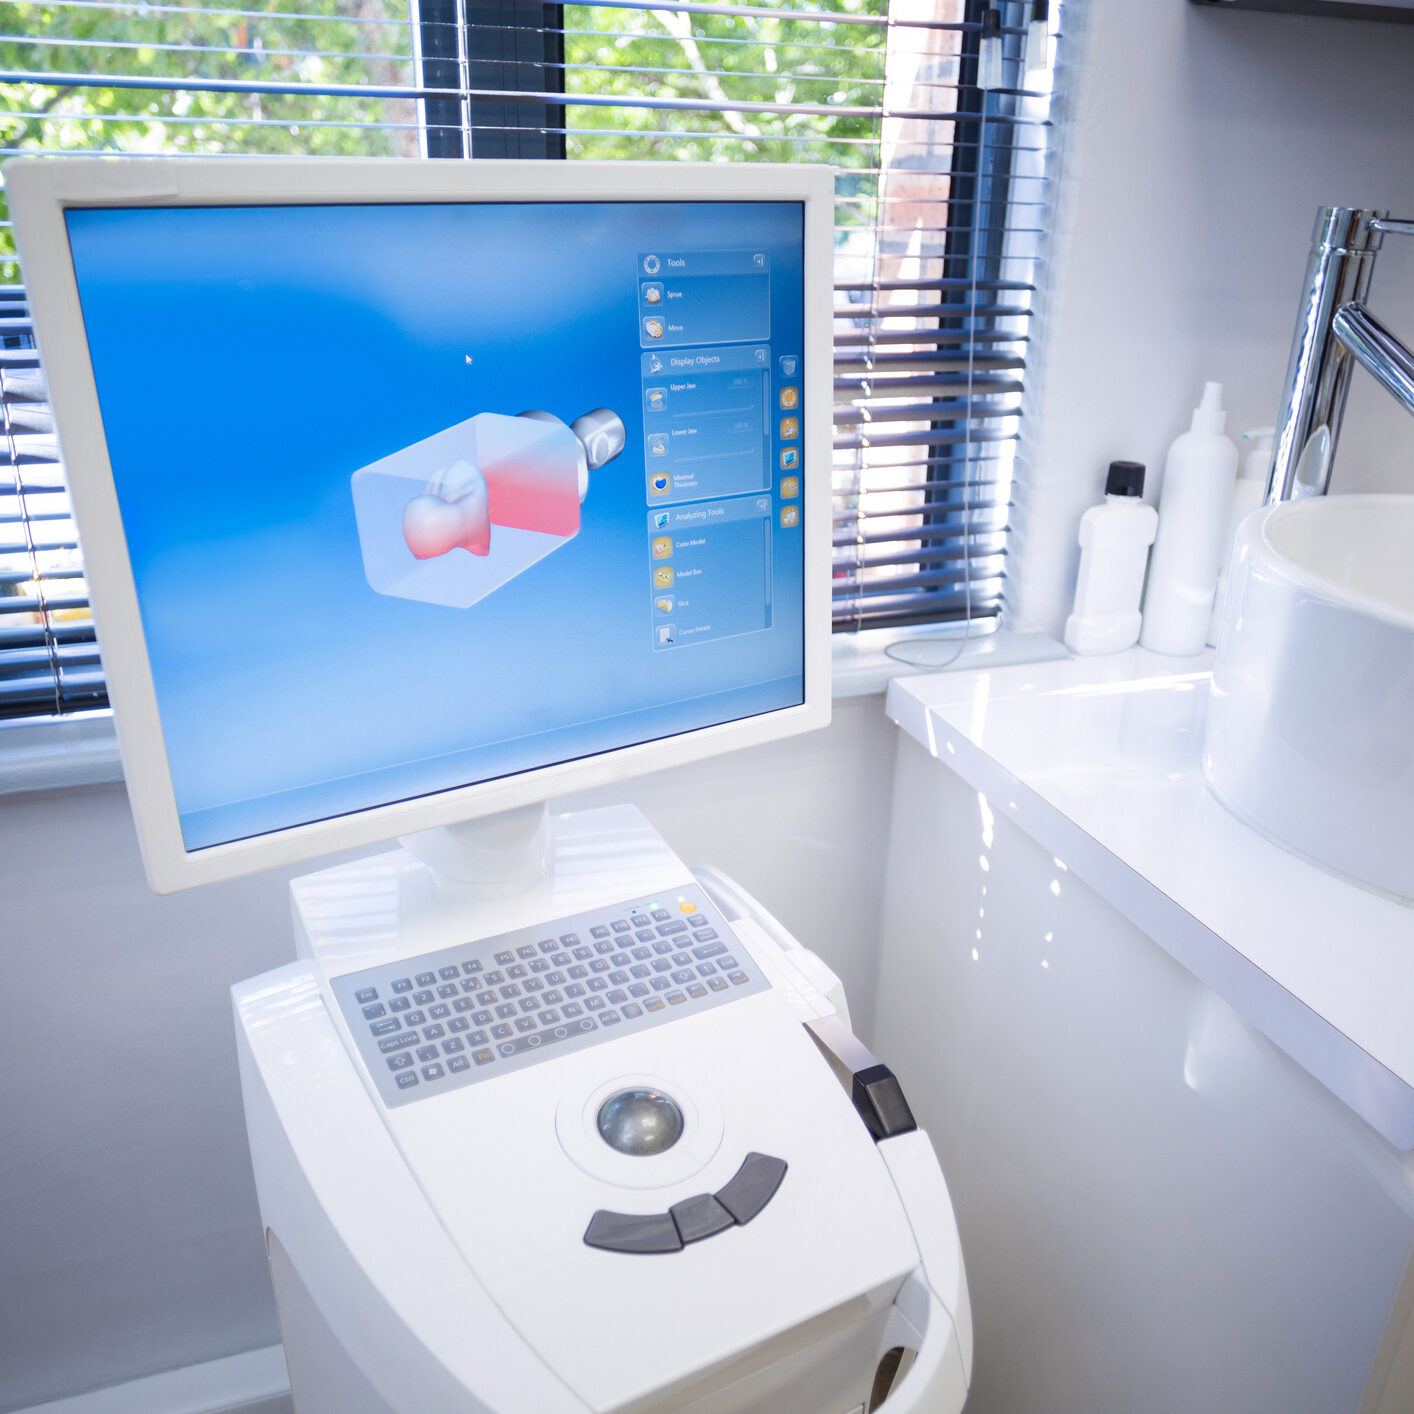 Itero scanner machine in dental clinic